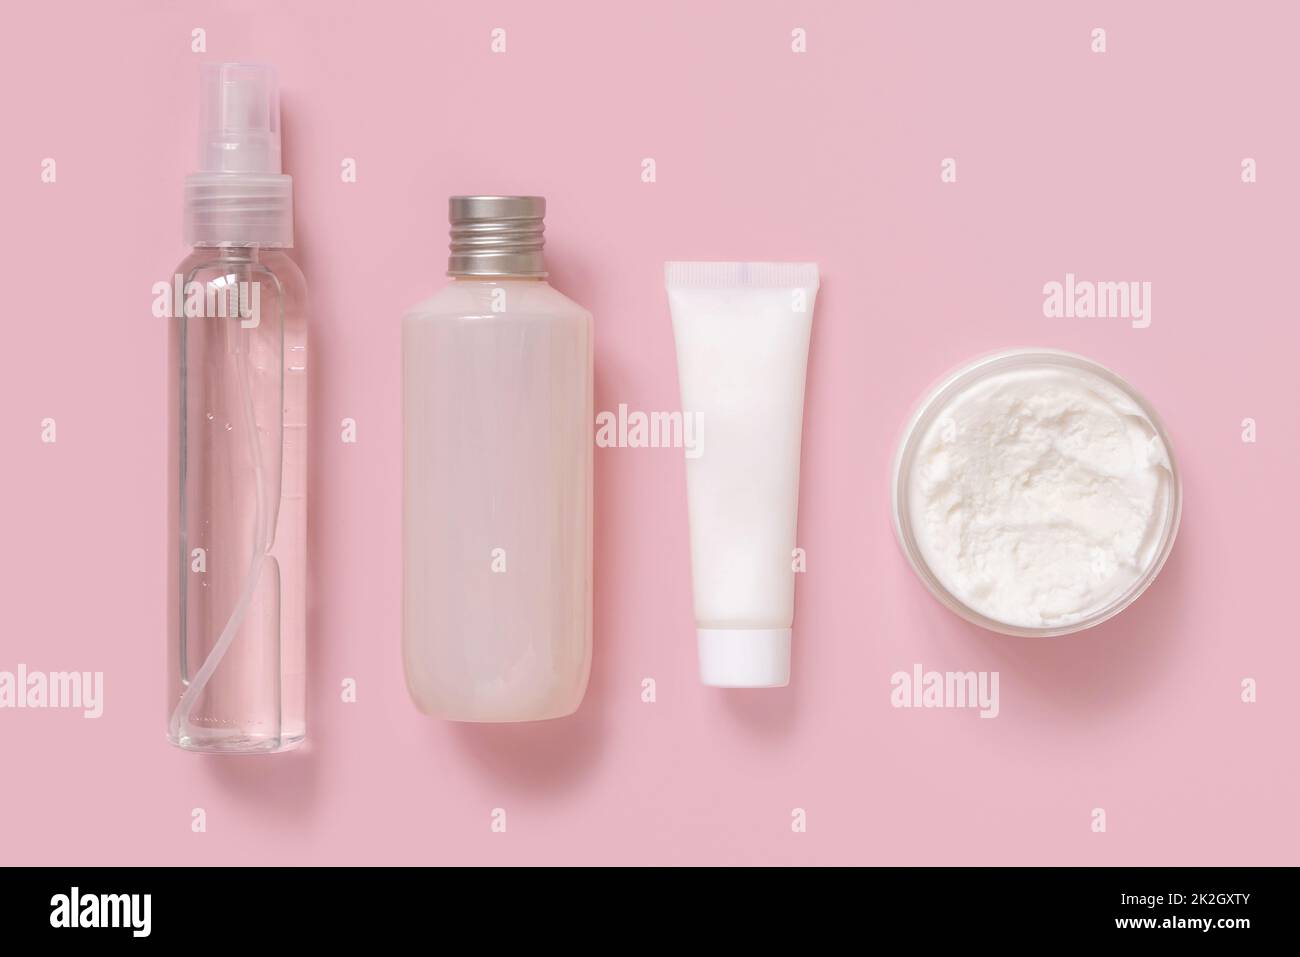 Cosmetici fatti in casa in tubi di plastica e bottiglie in vista rosa dall'alto. Modello di imballaggio del marchio. Foto Stock